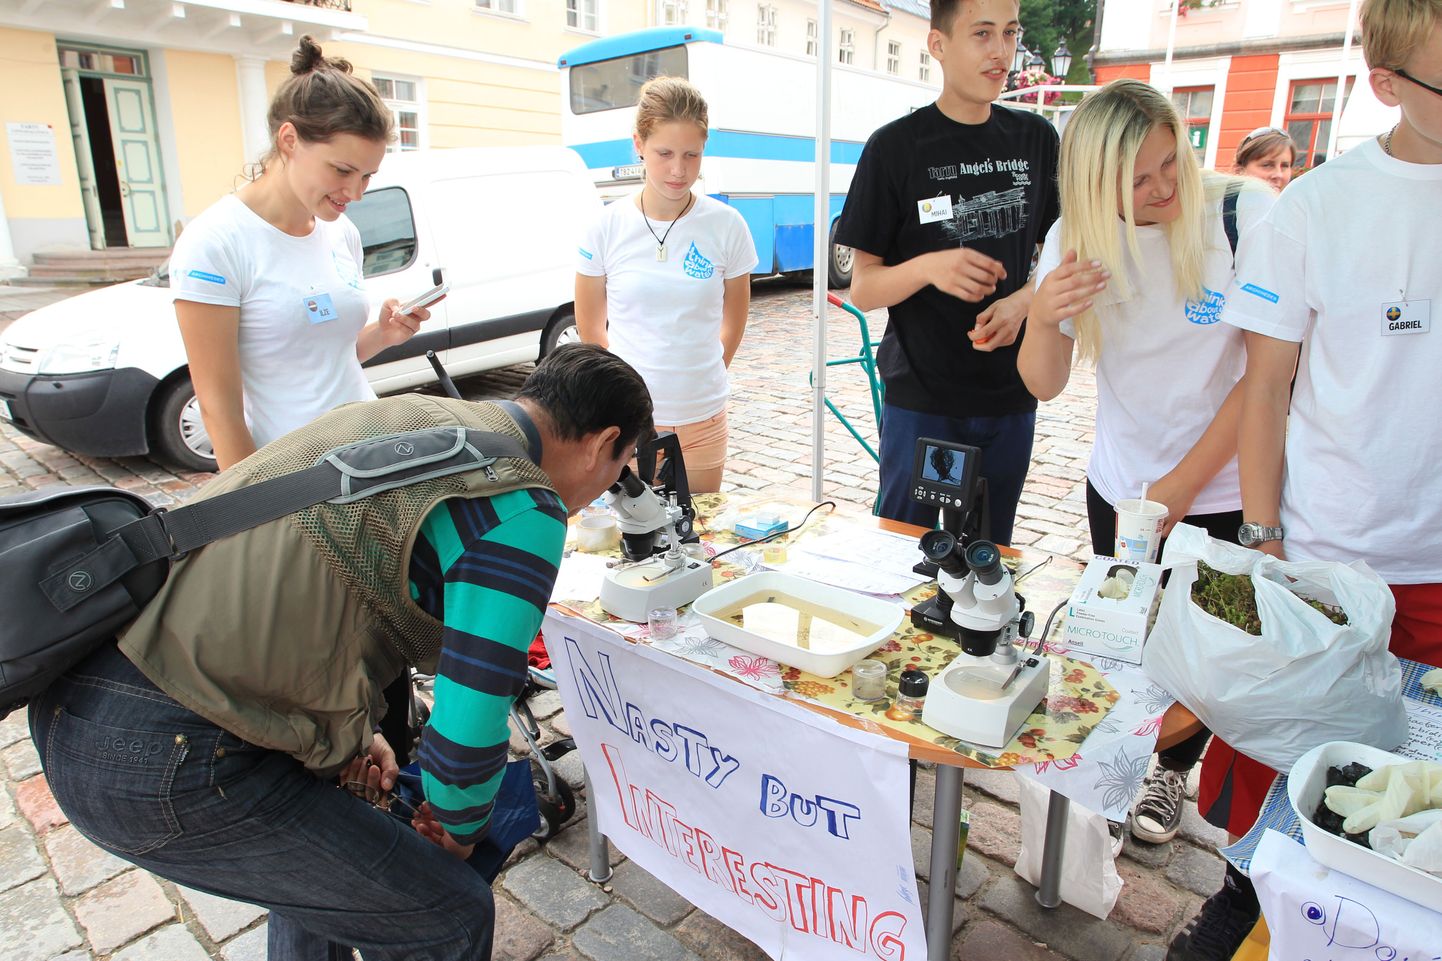 Üle-eelmisel aastal osales Idee24 koolitusprogrammis projekt «Think about water», mis sai rahastuse ning korraldas puhta vee propageerimise üritusi.